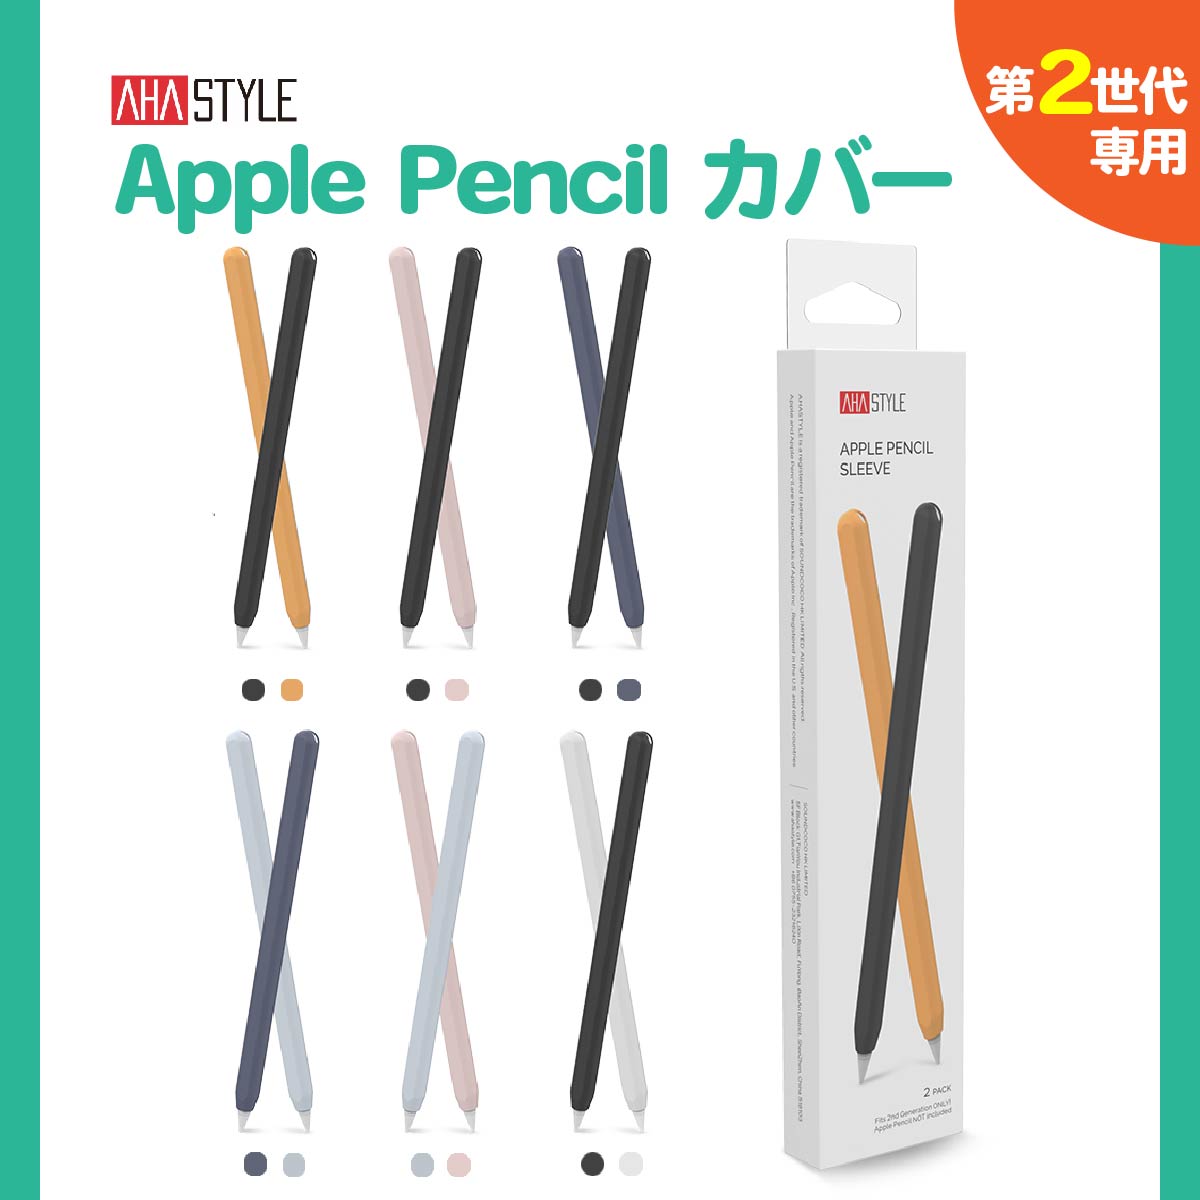 ハイグレードApple Pencilケース。2本セットでお得！ Apple Pencil 第二世代 カバー ケース 2本セット グリップ キャップ シリコン マグネット 充電 可能 アップルペンシル 第2世代 ケース かわいい 滑り止め AHAStyle アハスタイル レビュー プレゼント実施中